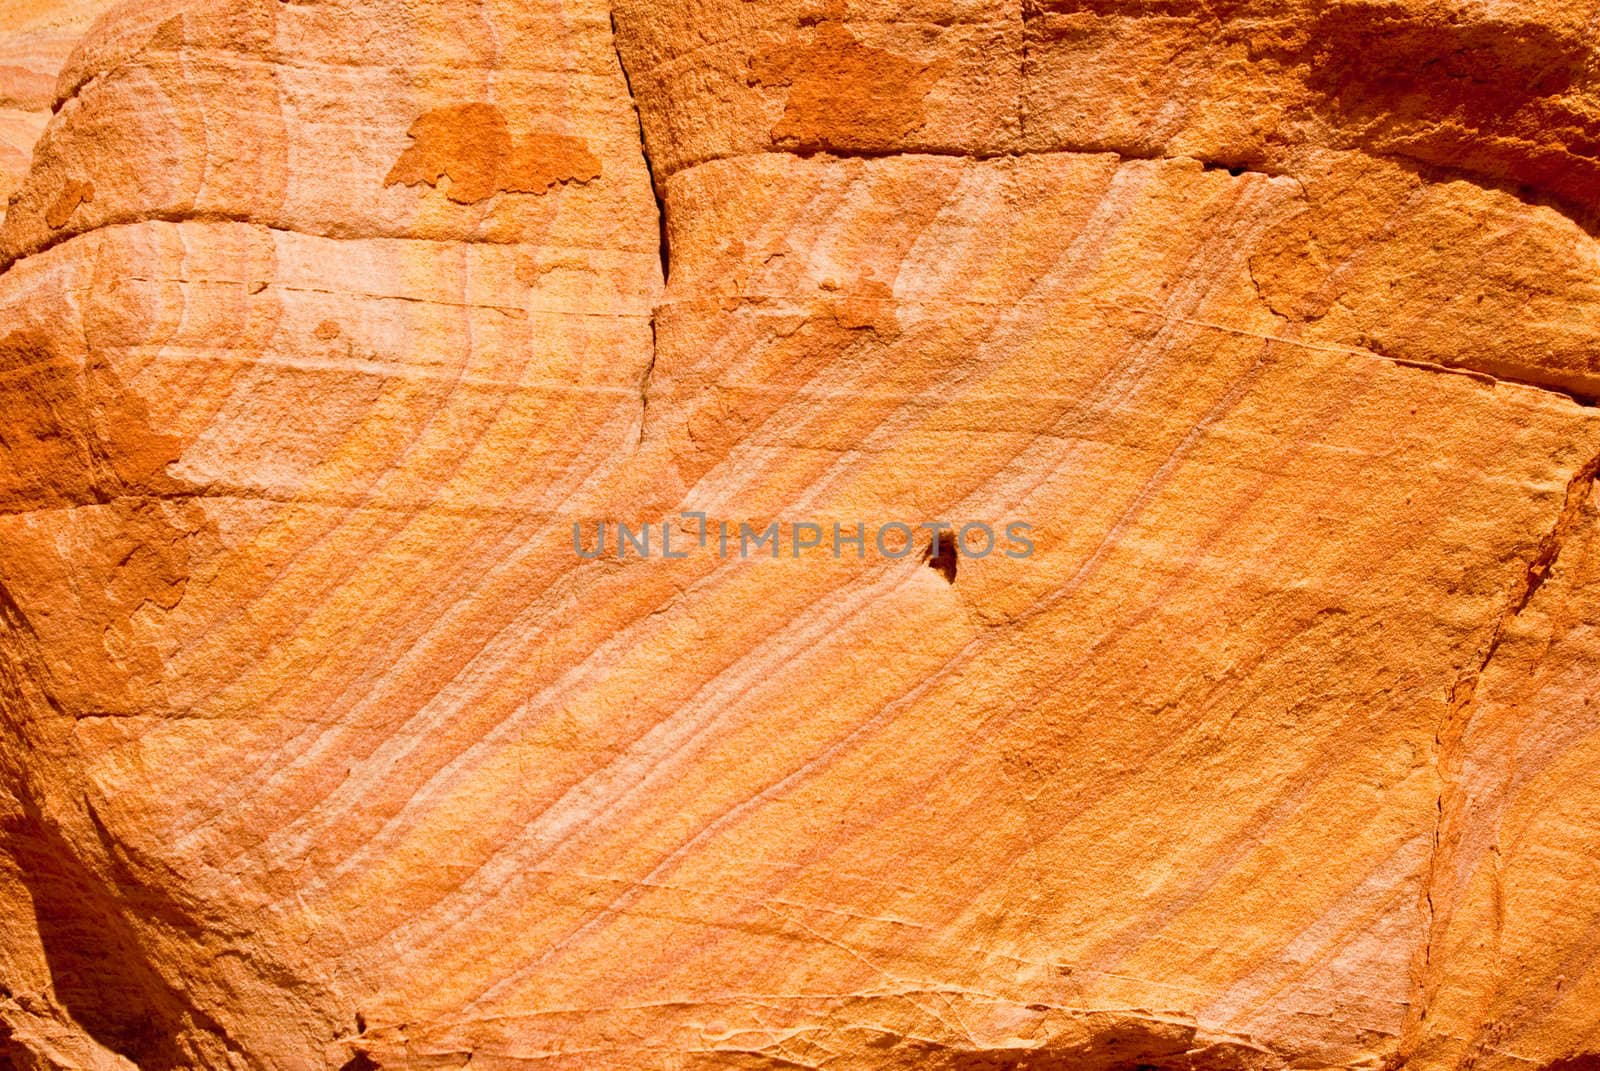 Orange sandstone boulder in Nevada, USA